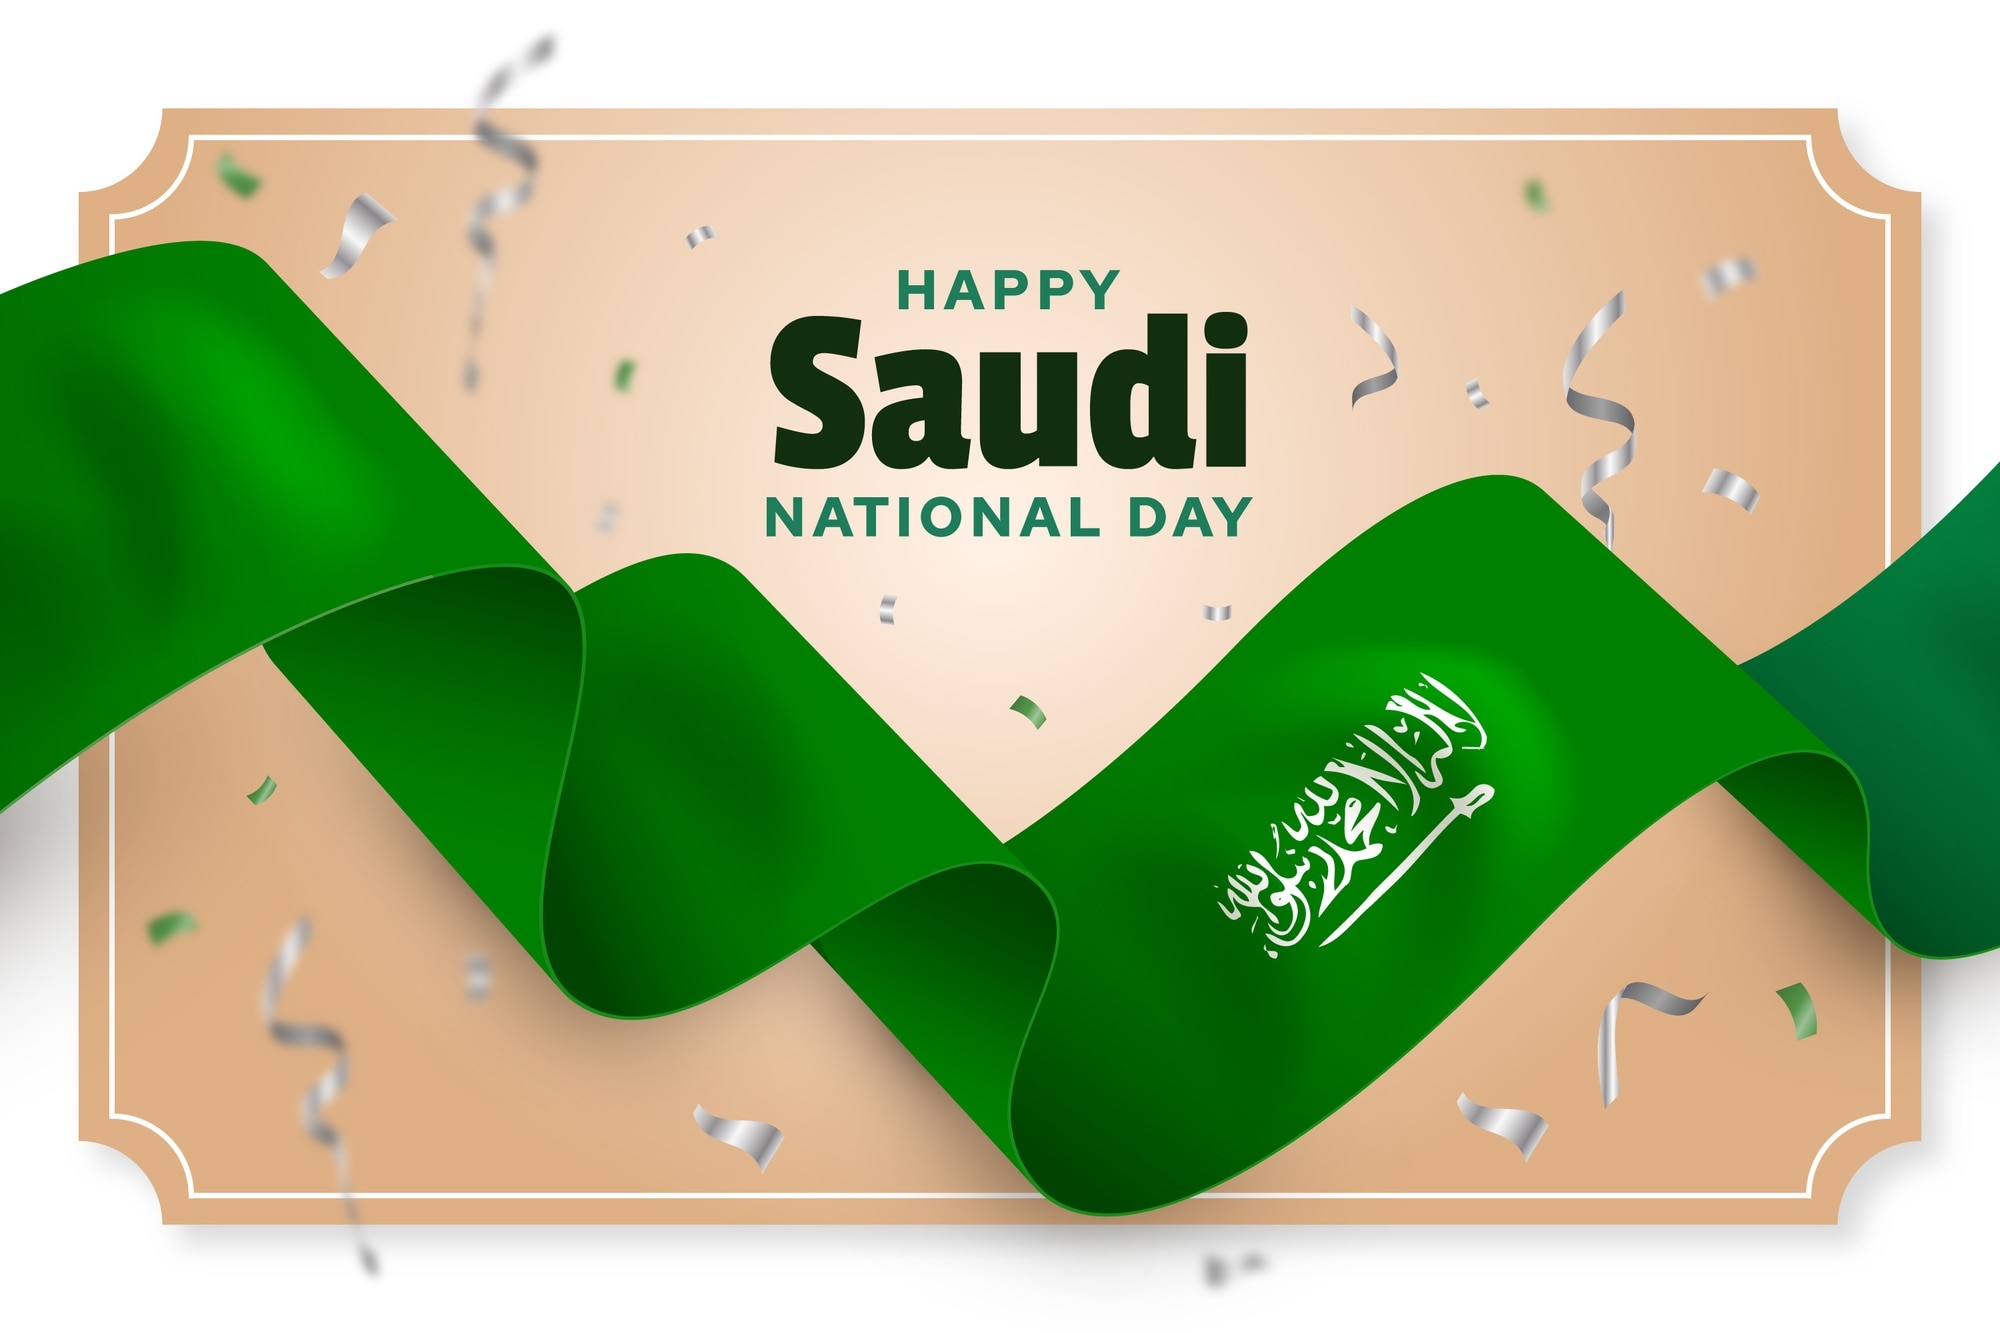 Ngày quốc khánh Ả Rập Xê Út: Chào mừng ngày quốc khánh Ả Rập Xê Út! Hãy cùng chúc mừng những cột mốc đáng kinh ngạc mà quốc gia này đã đạt được trong quá trình phát triển kinh tế, văn hóa và xã hội. Hãy xem những bức ảnh đầy cảm hứng liên quan đến Ngày Quốc Khánh này!